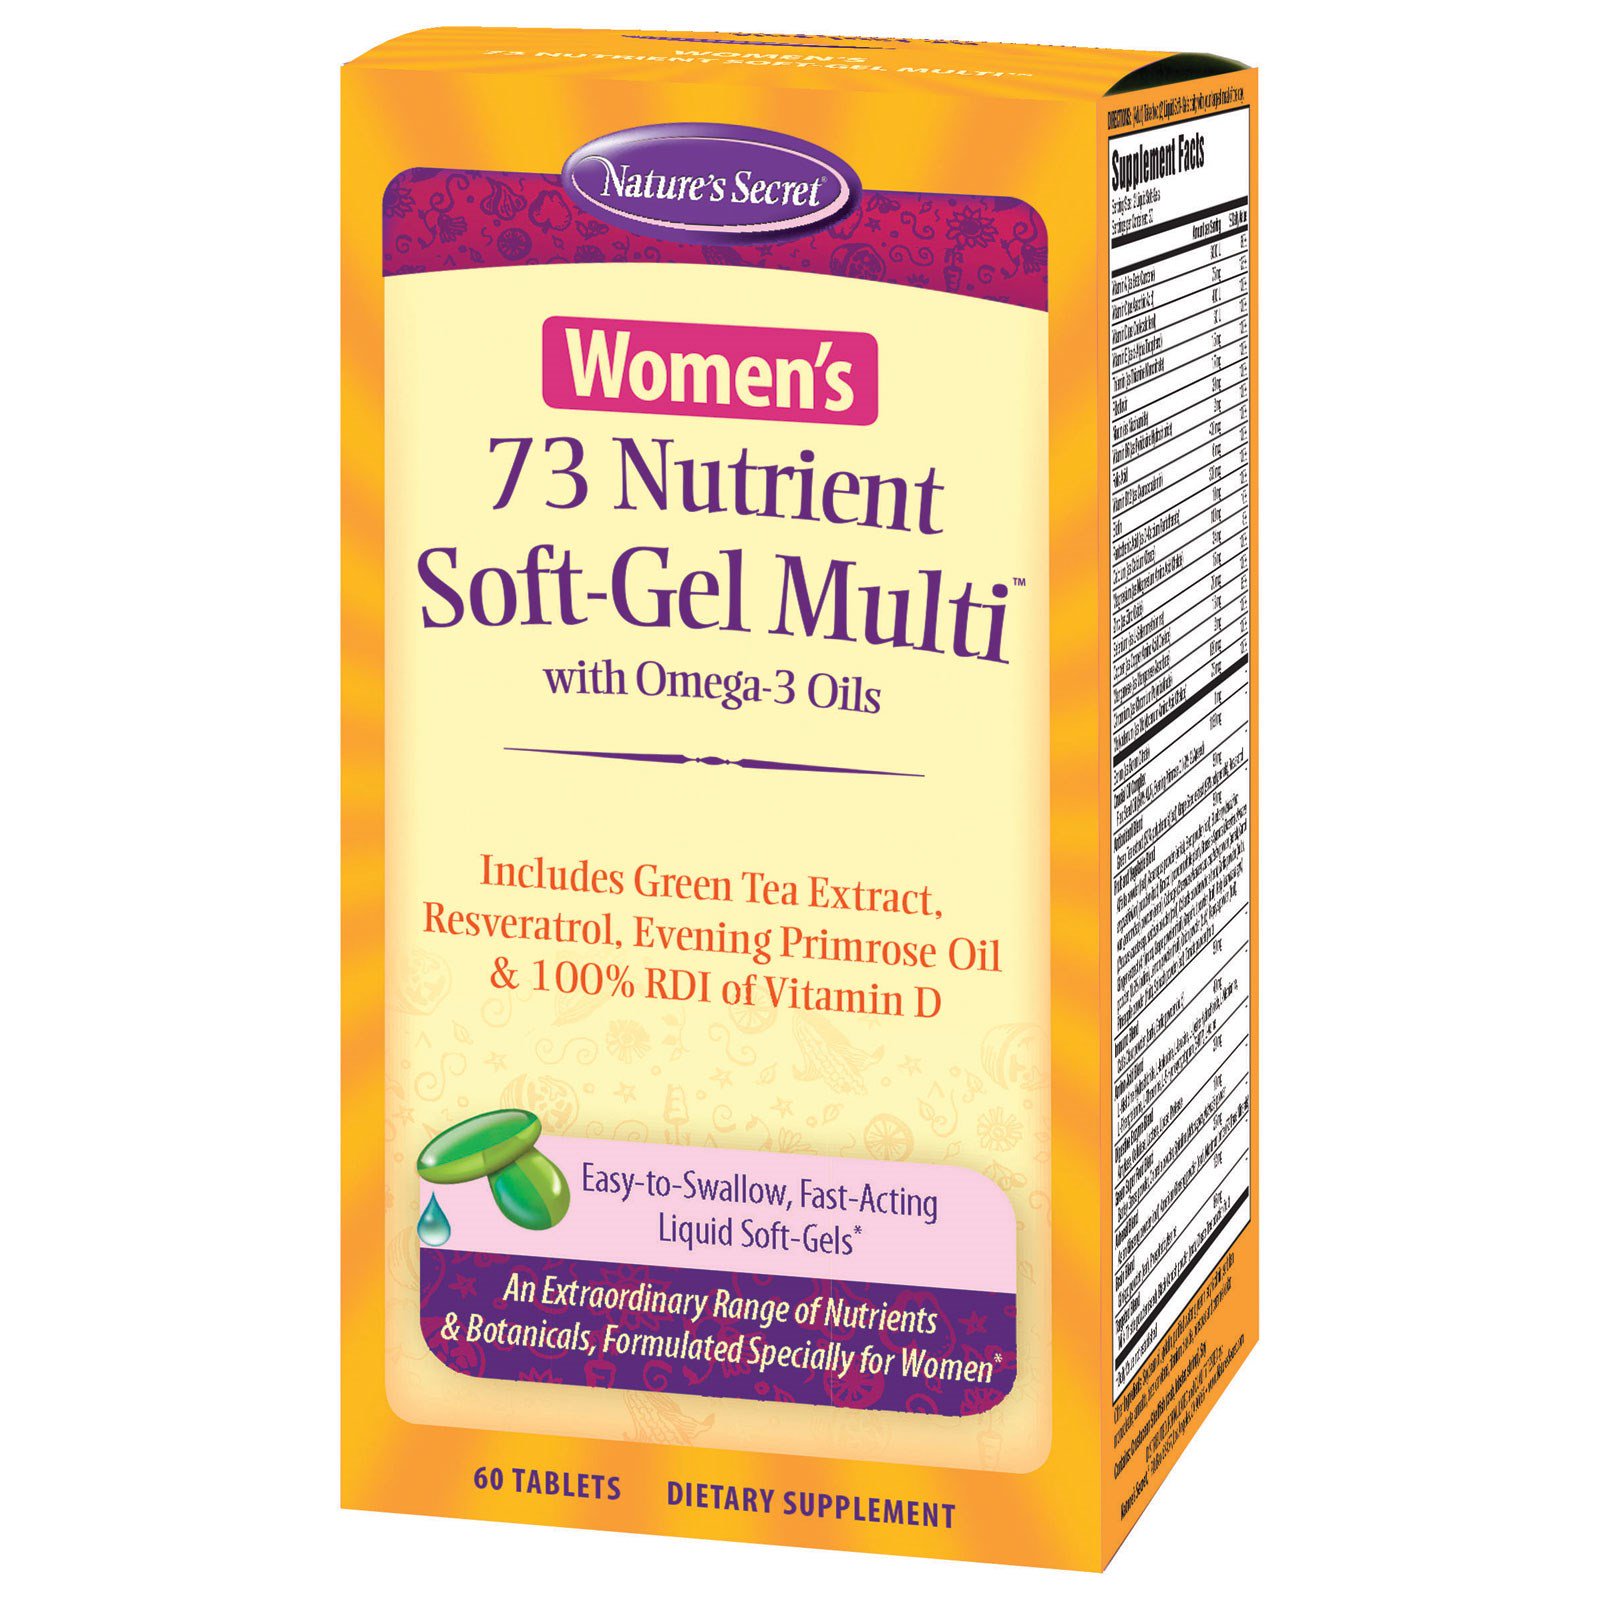 Nature's Secret, 73 Nutrient Soft-Gel Multi для женщин, с маслами омега-3, 60 желатиновых капсул с жидким содержимым